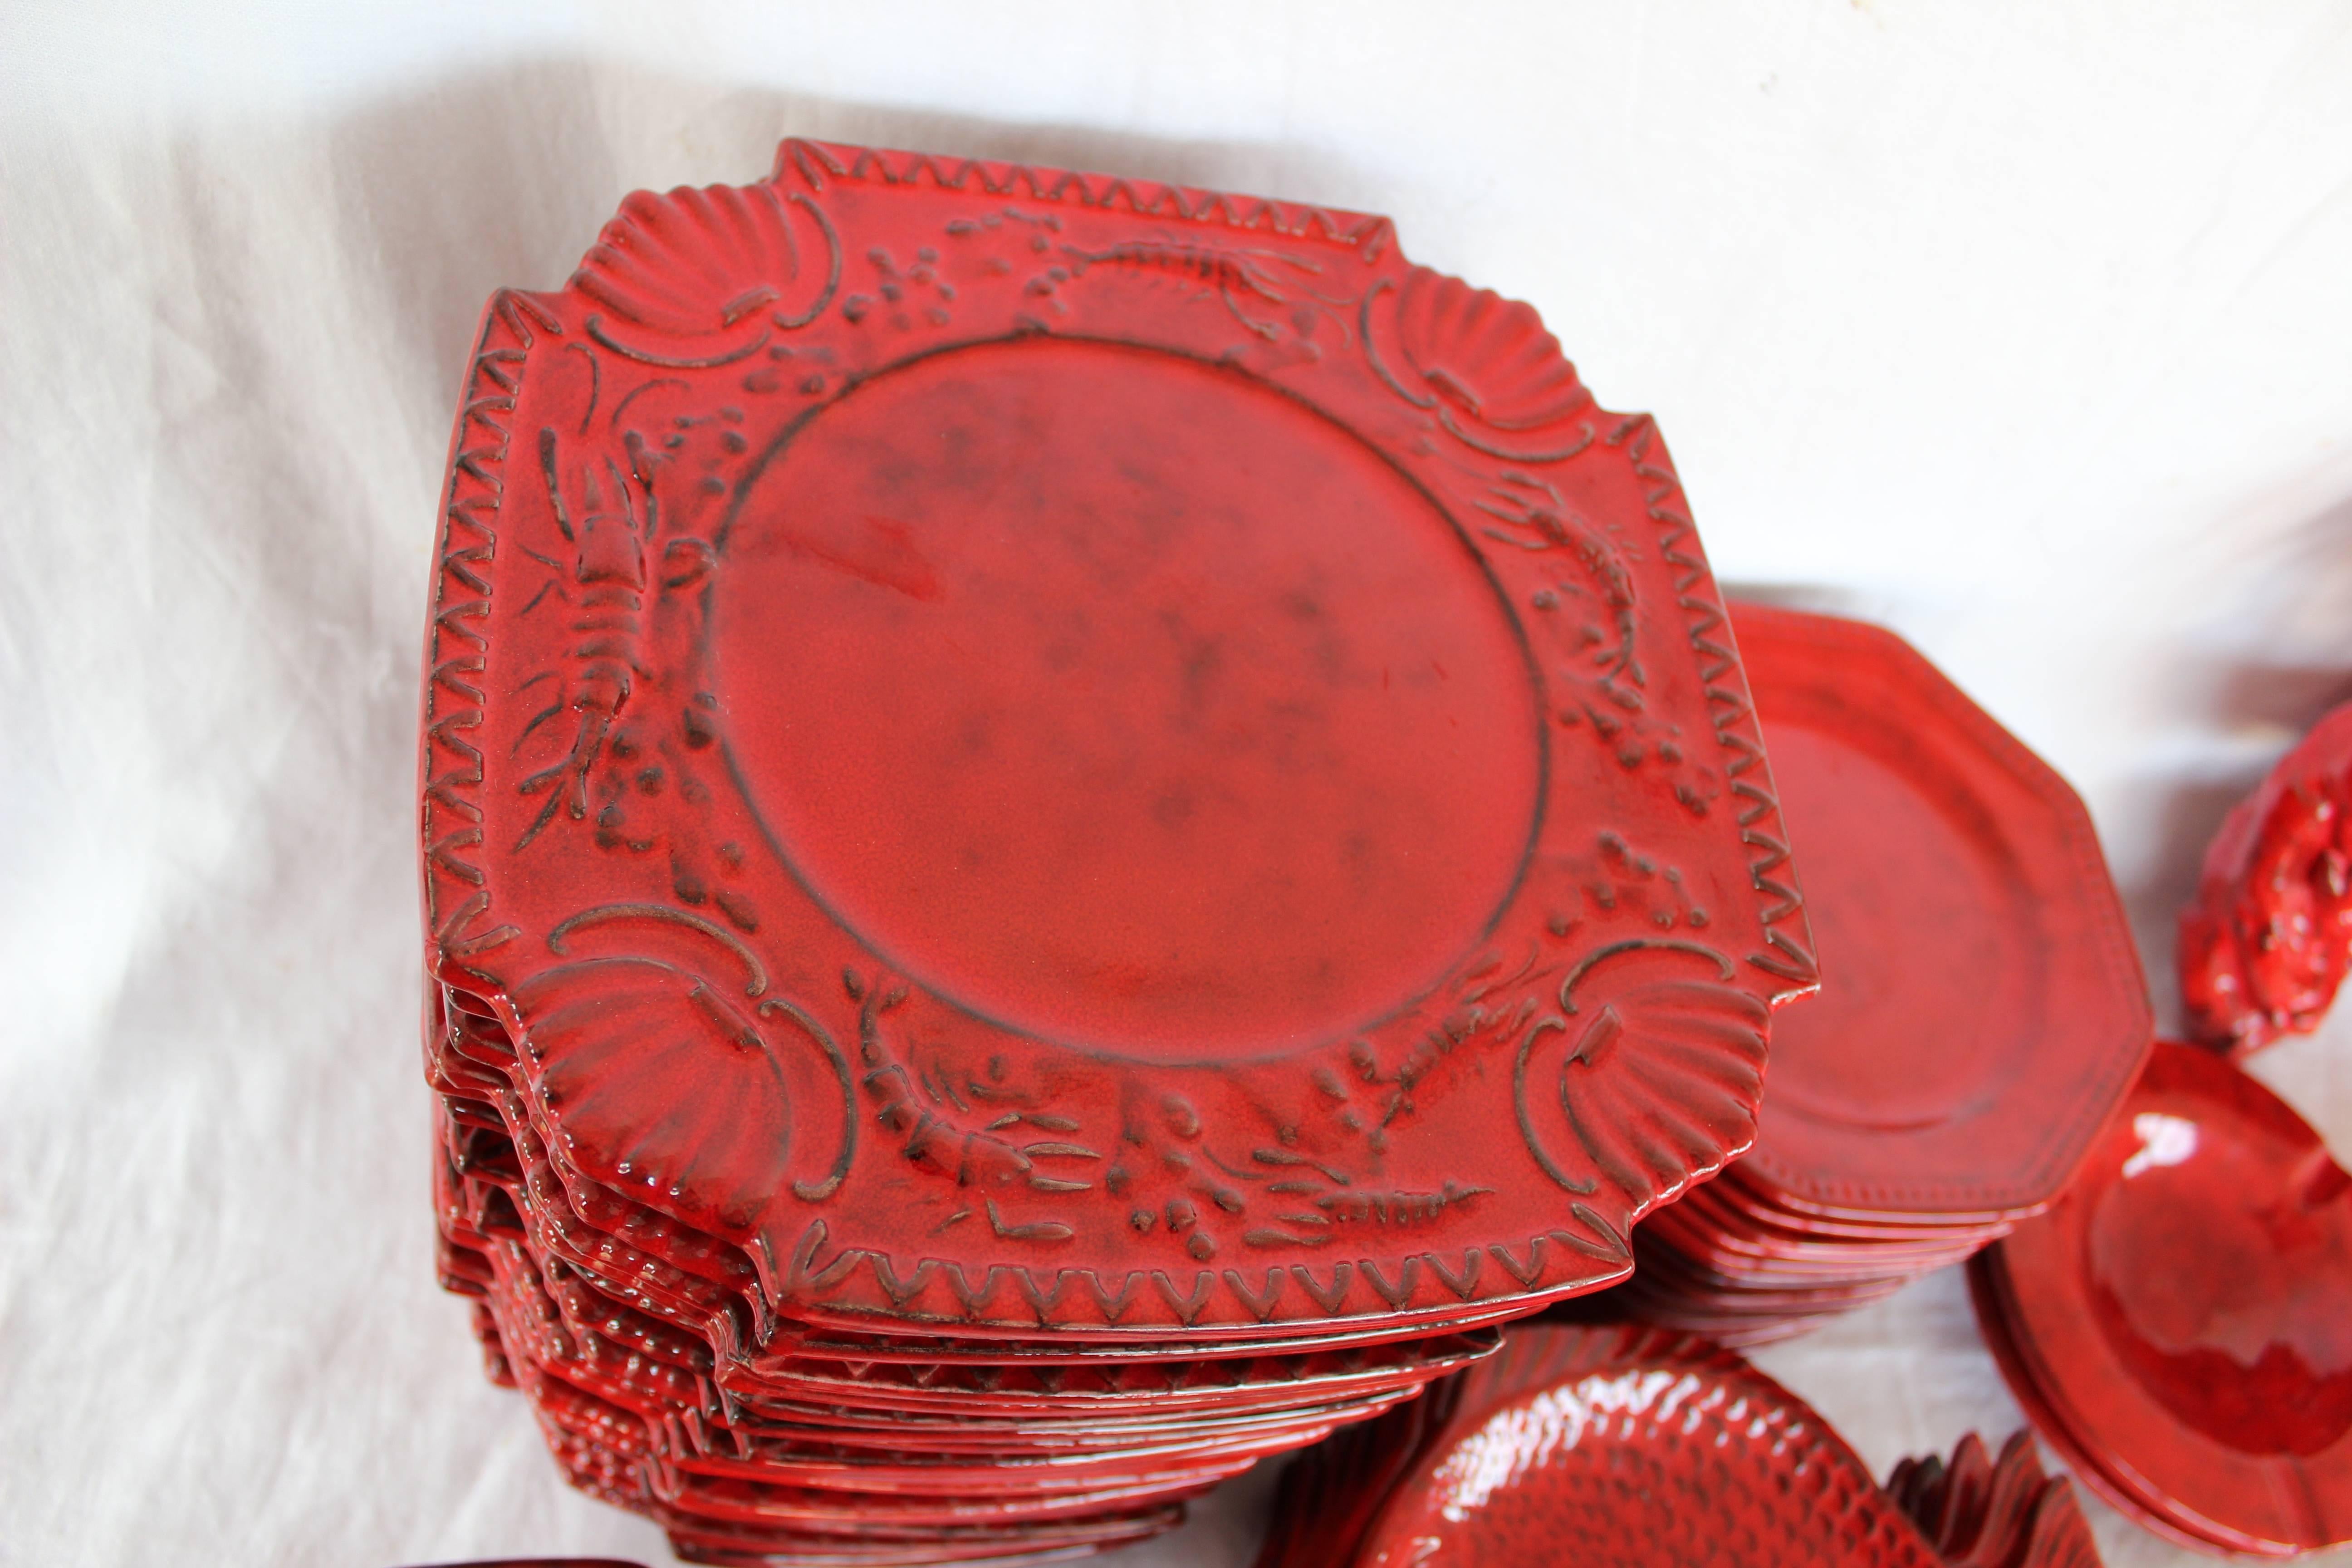 Italian Red Glazed Ceramic Dinner Set 4